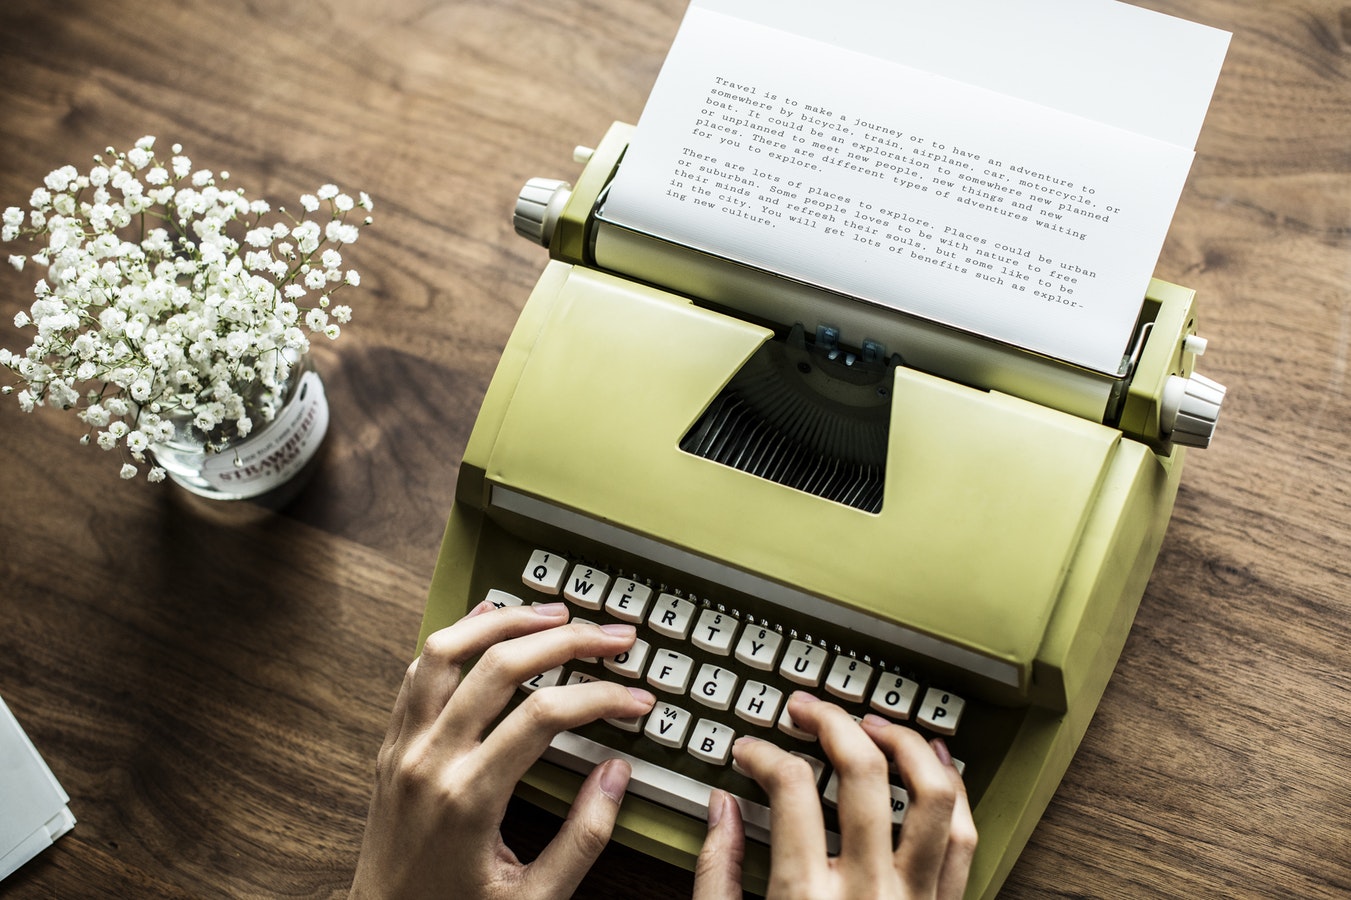 Writer's Group at Big Island default image depicting someone typing on typewriter